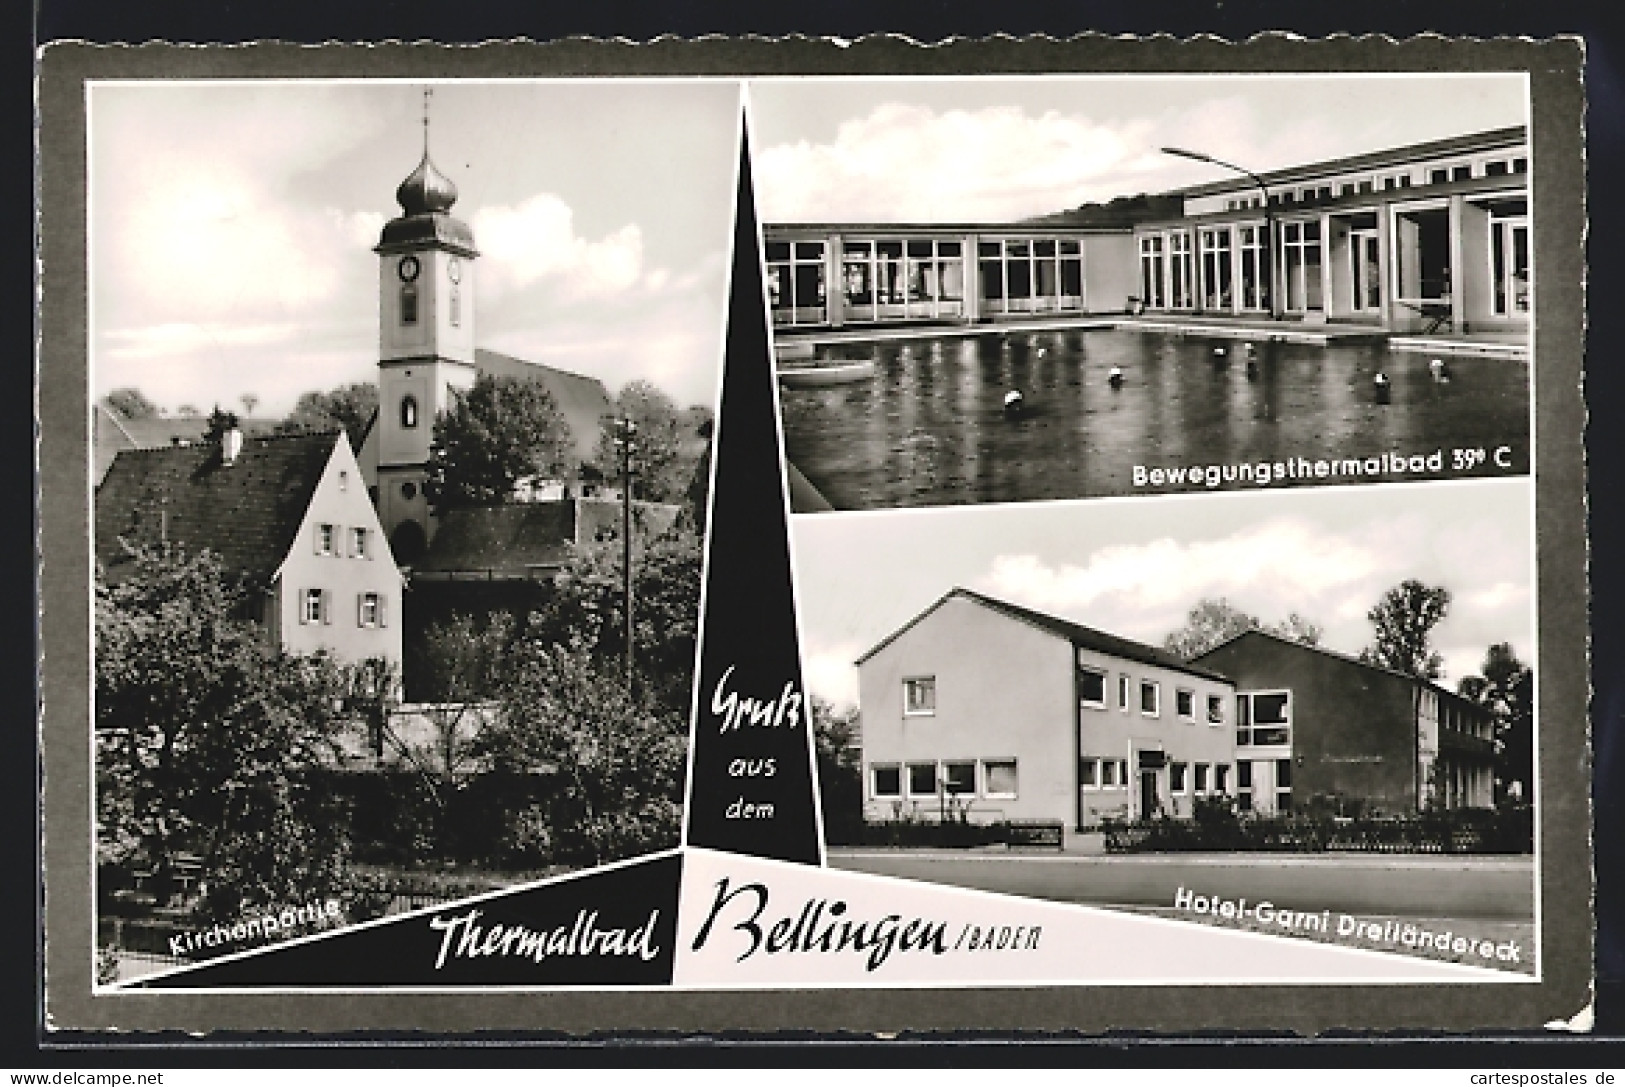 AK Bellingen, Kirchenpartie, Bewegungsthermalbad, Hotel Garni Dreiländereck  - Bad Bellingen